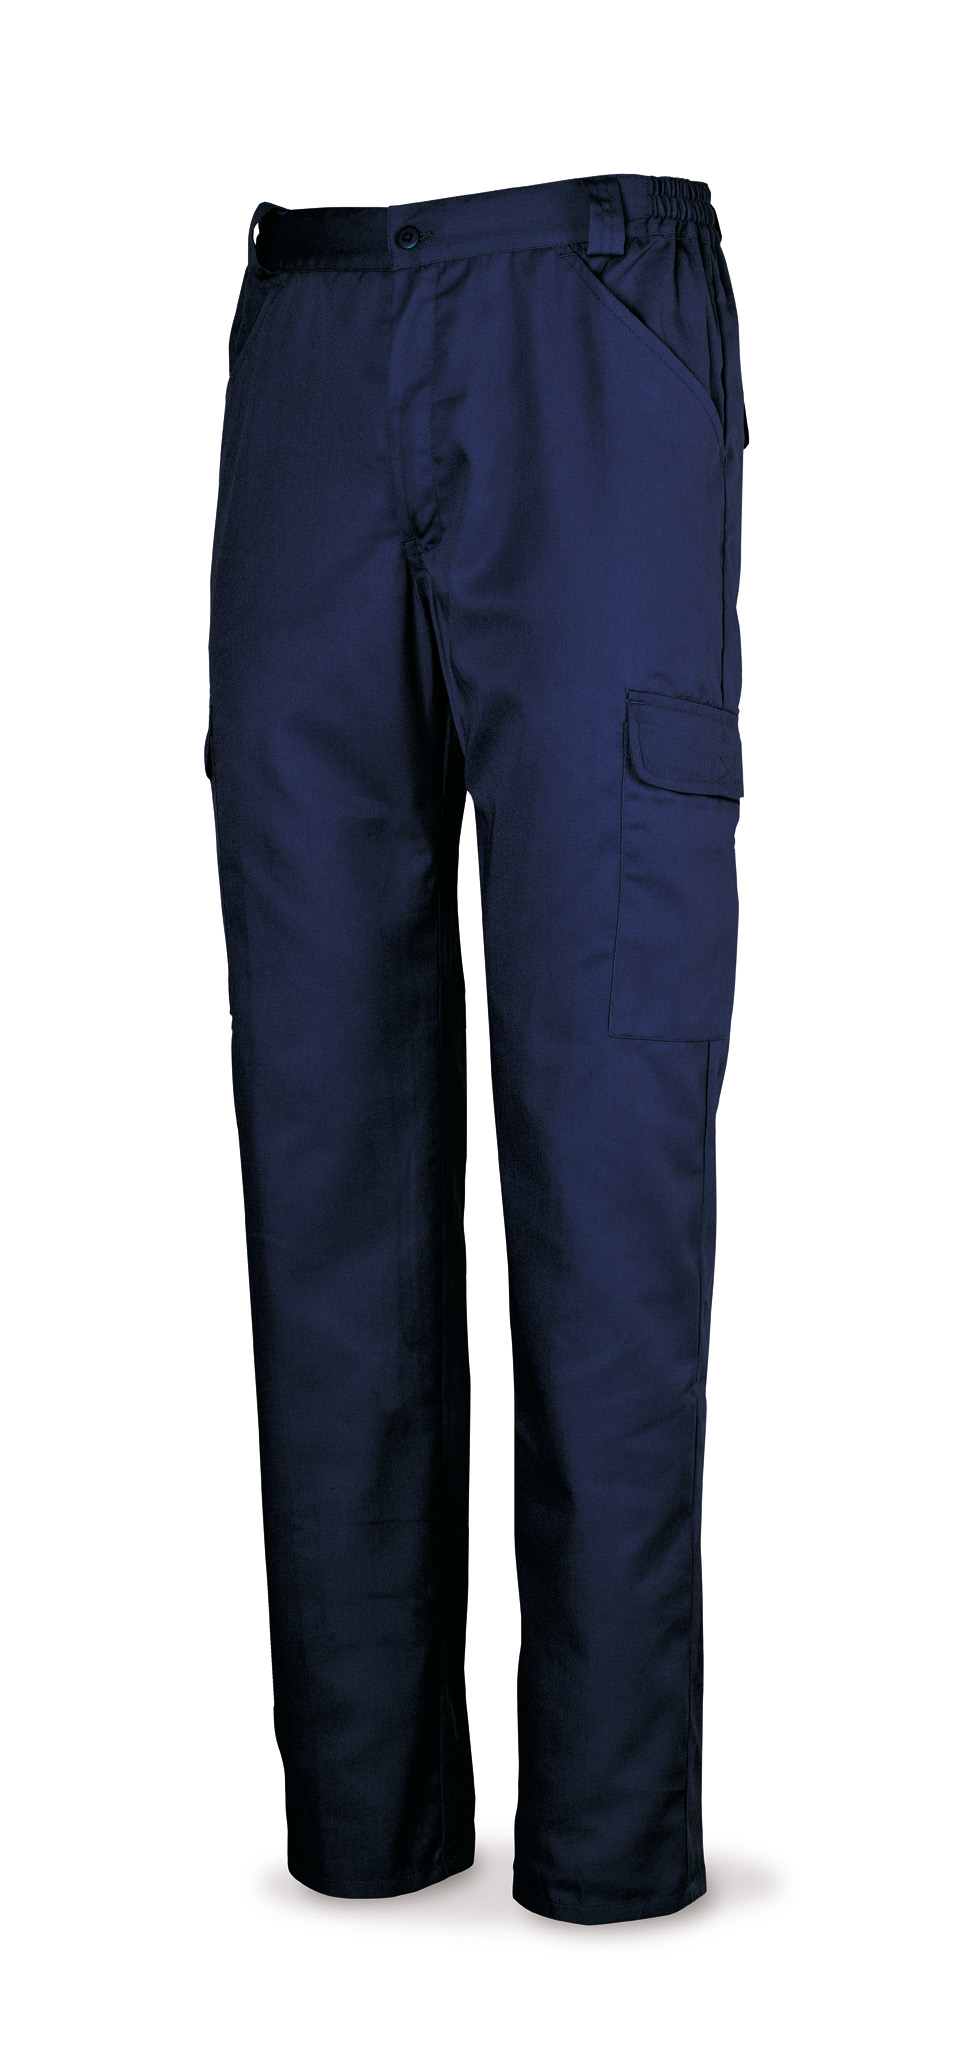 388-B Vestuario Laboral Basic Line Macaco azulina algodão 200 g.